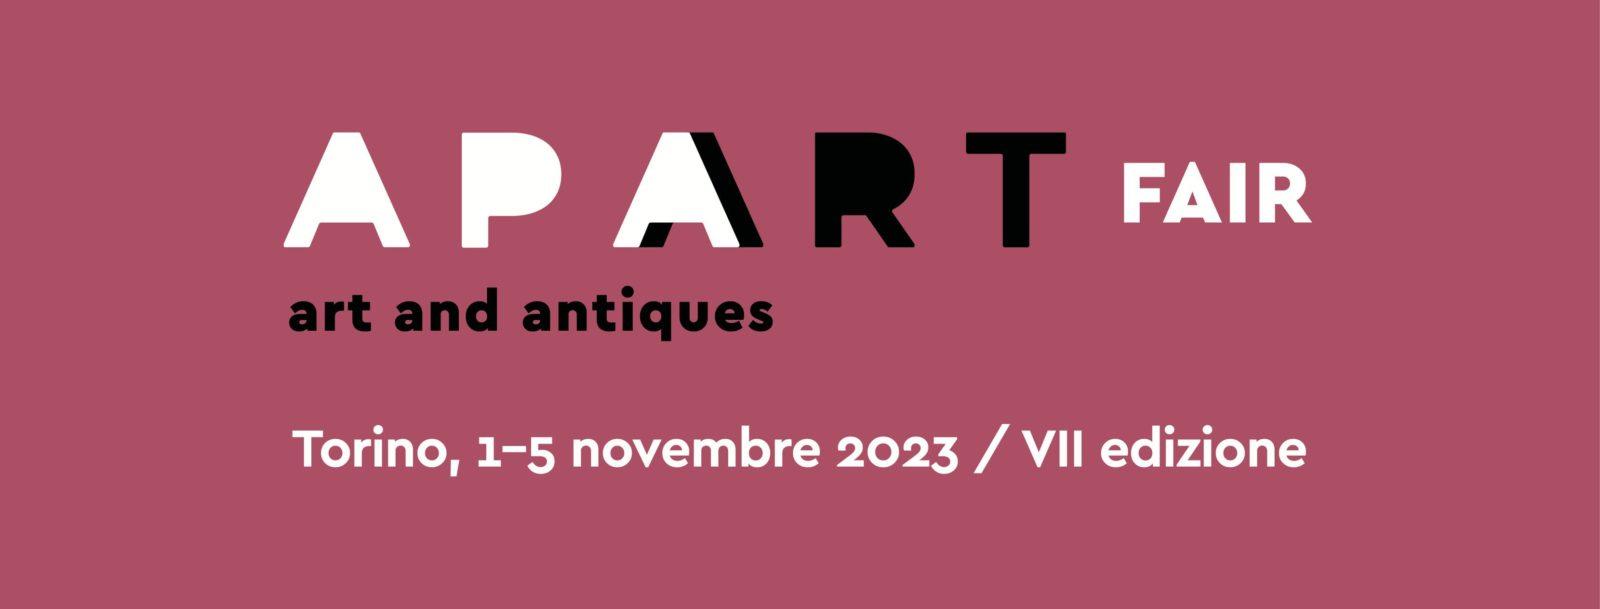 Apart Fair - Art & Antiques Fair - Torino